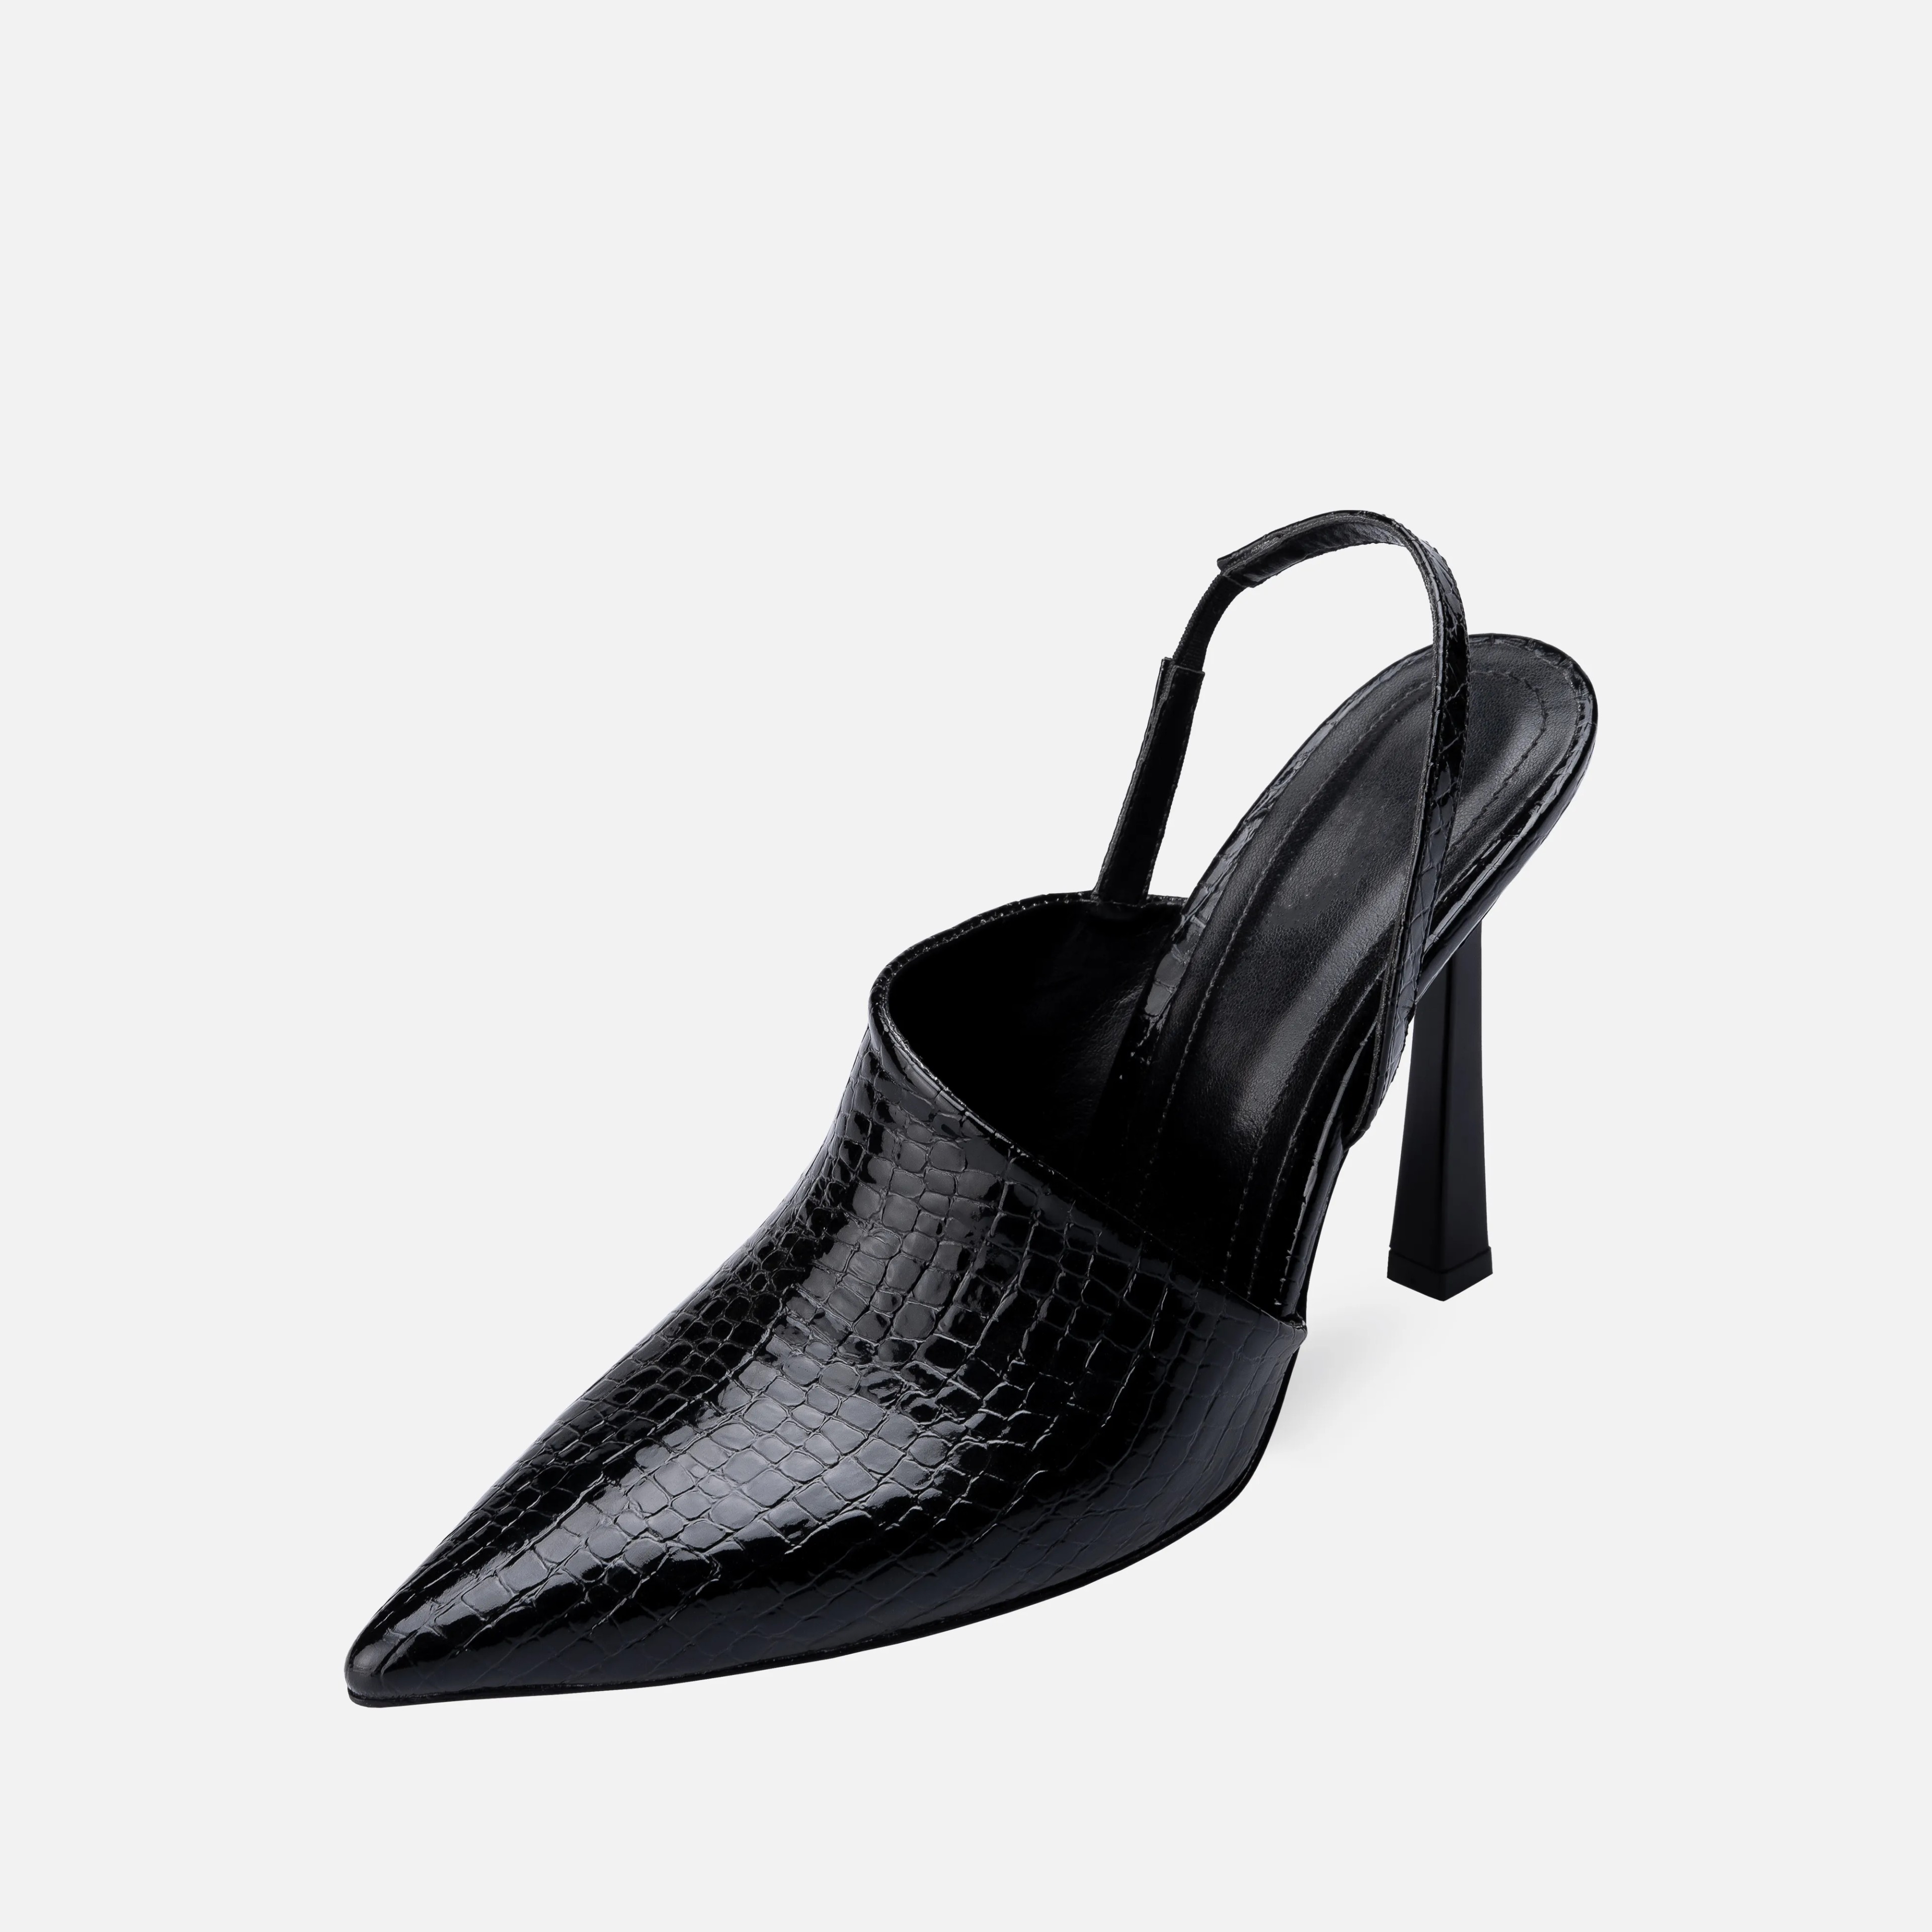 Rugan Baskı Desenli İnce Yüksek Topuklu Stiletto - Siyah